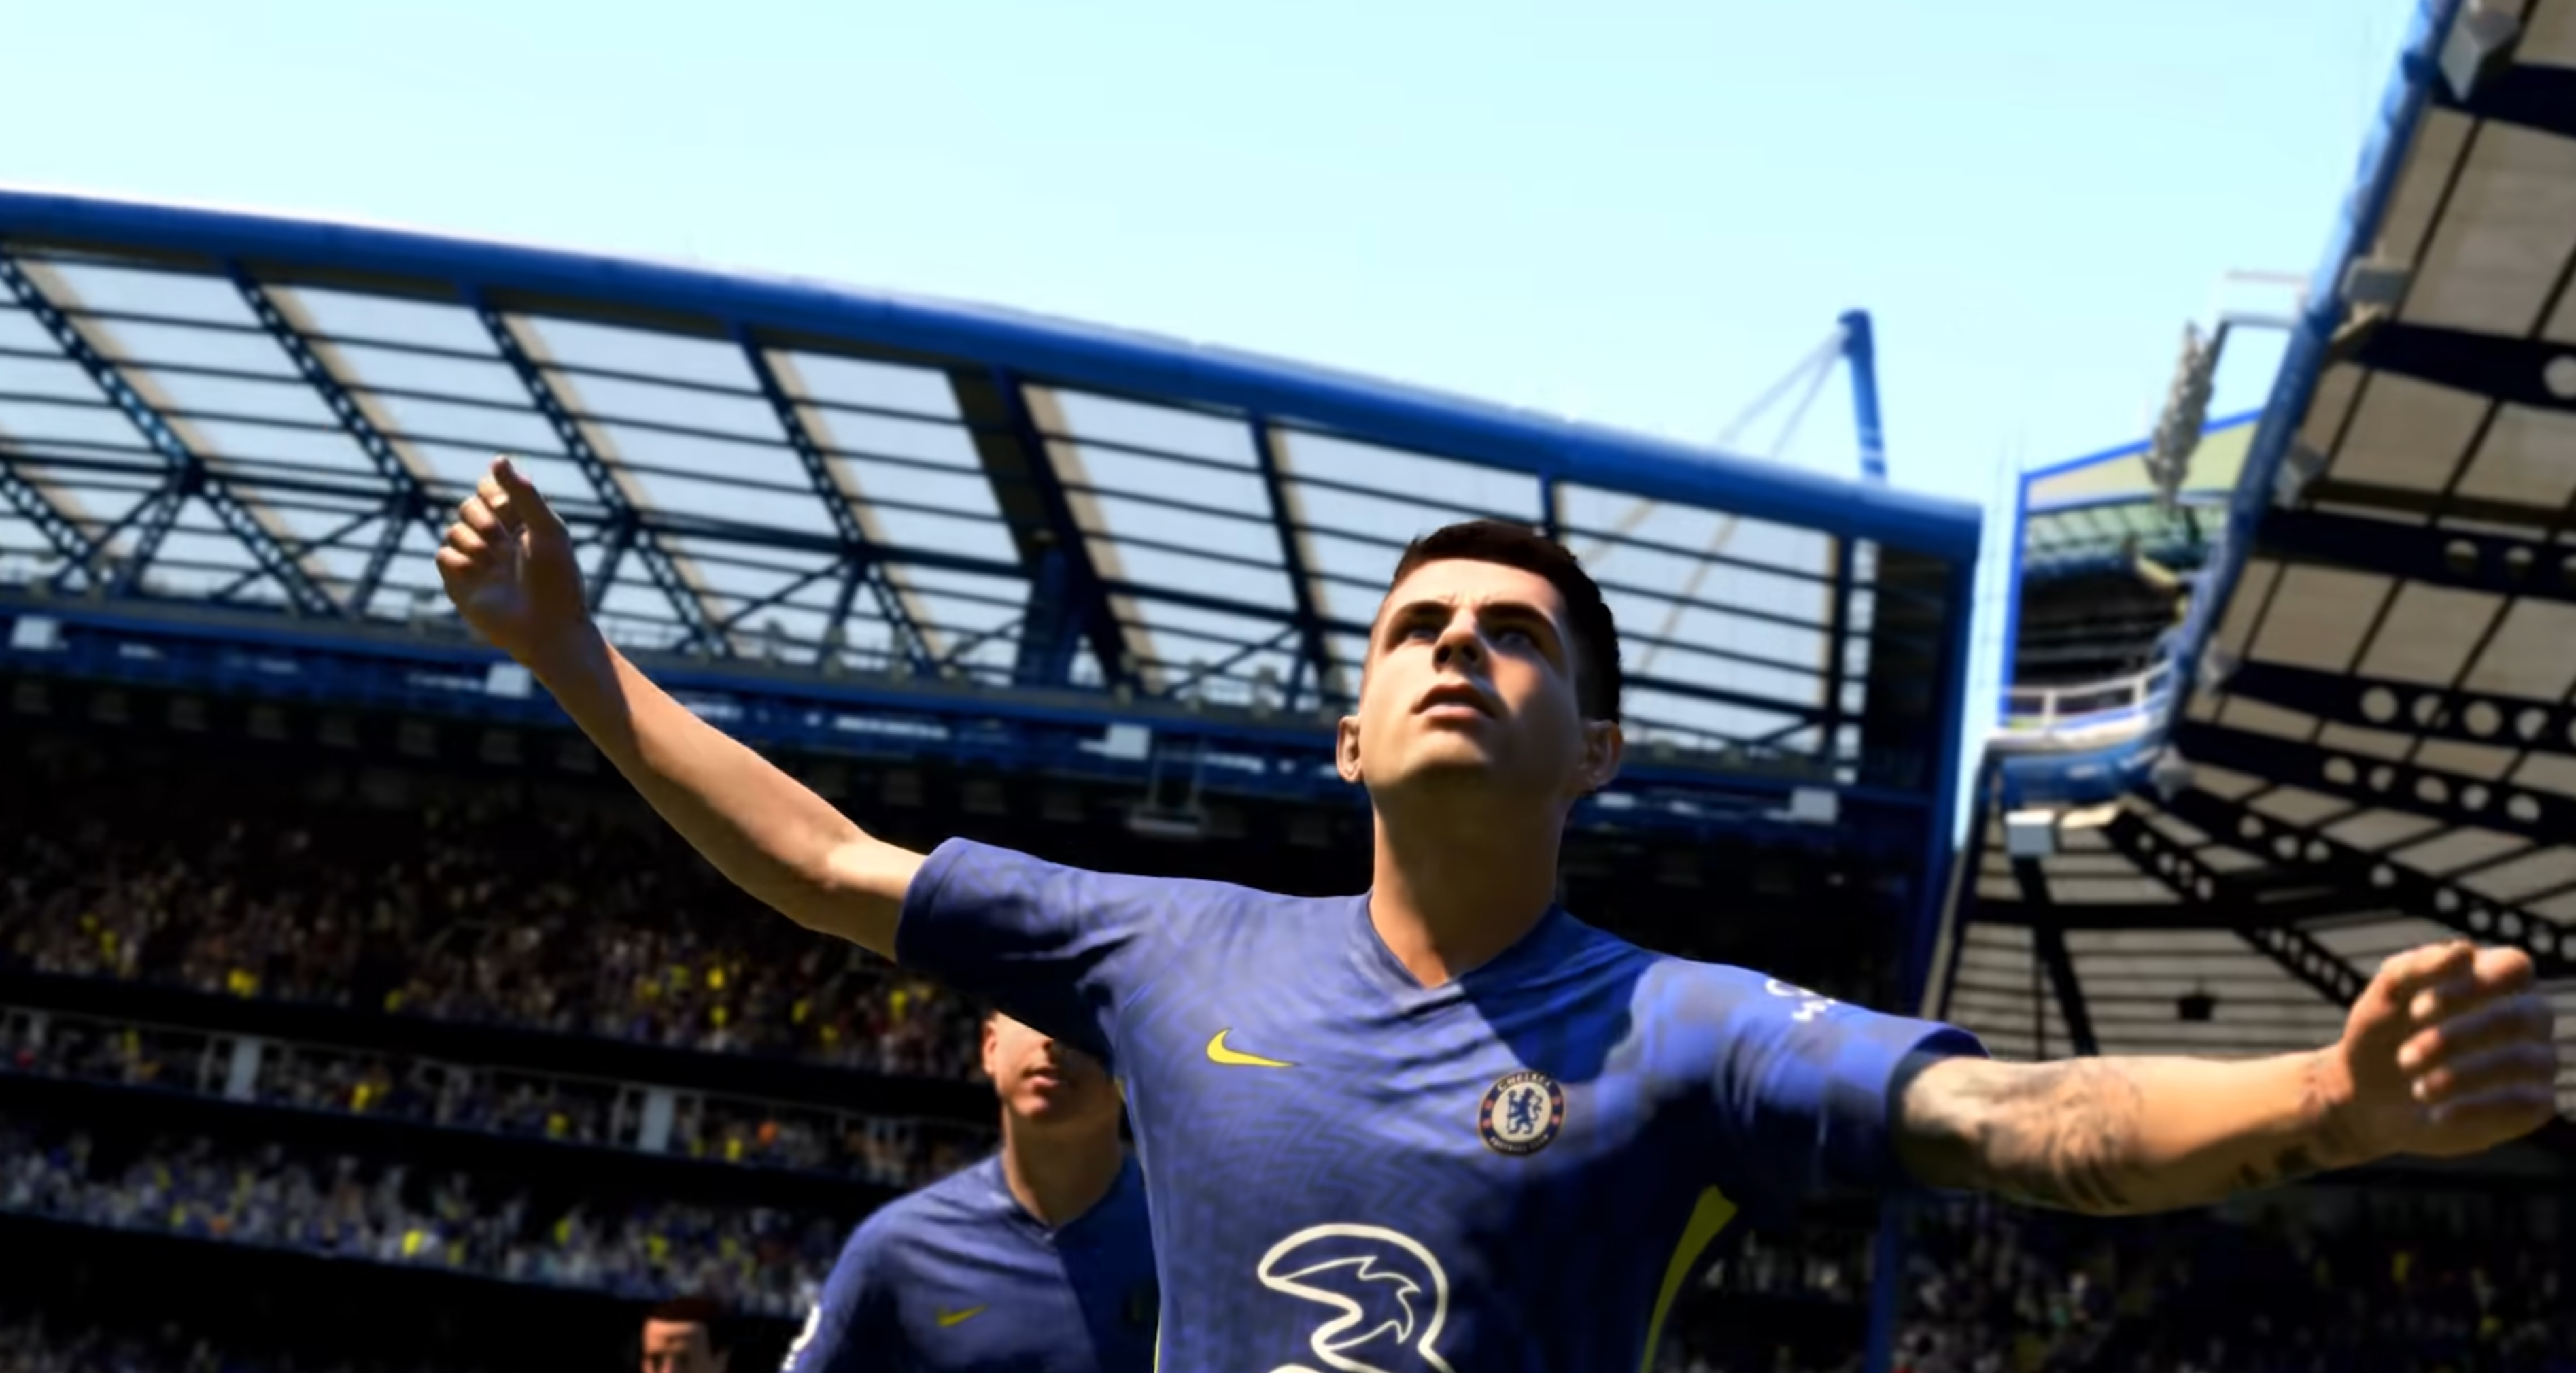 Bilder zu FIFA 22 landet ab nächster Woche bei EA Play und im Xbox Game Pass Ultimate